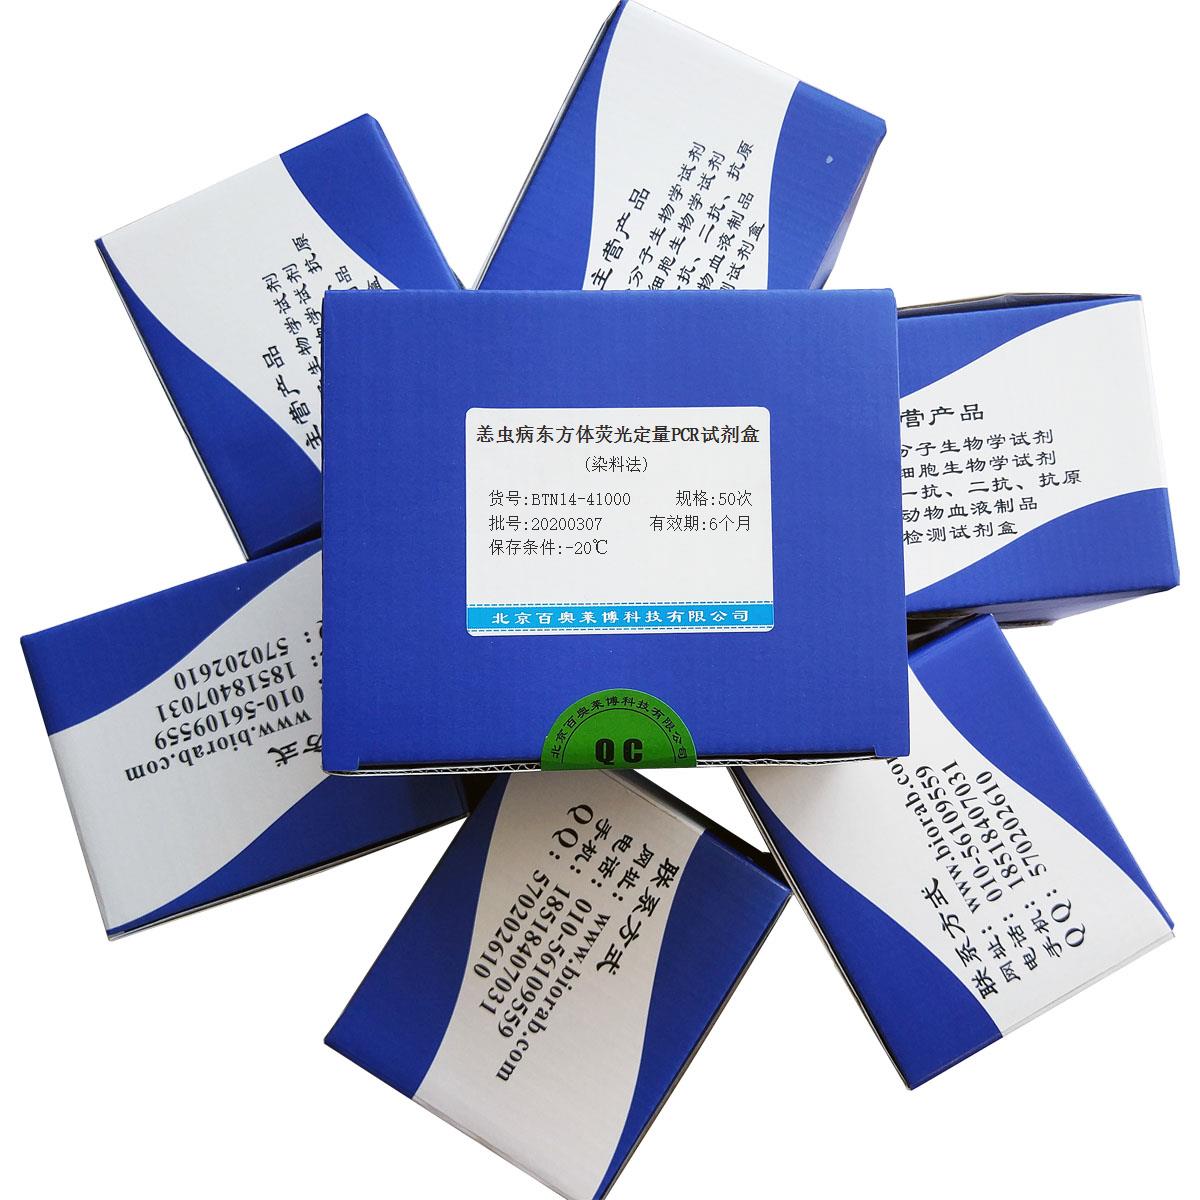 恙虫病东方体荧光定量PCR试剂盒(染料法)